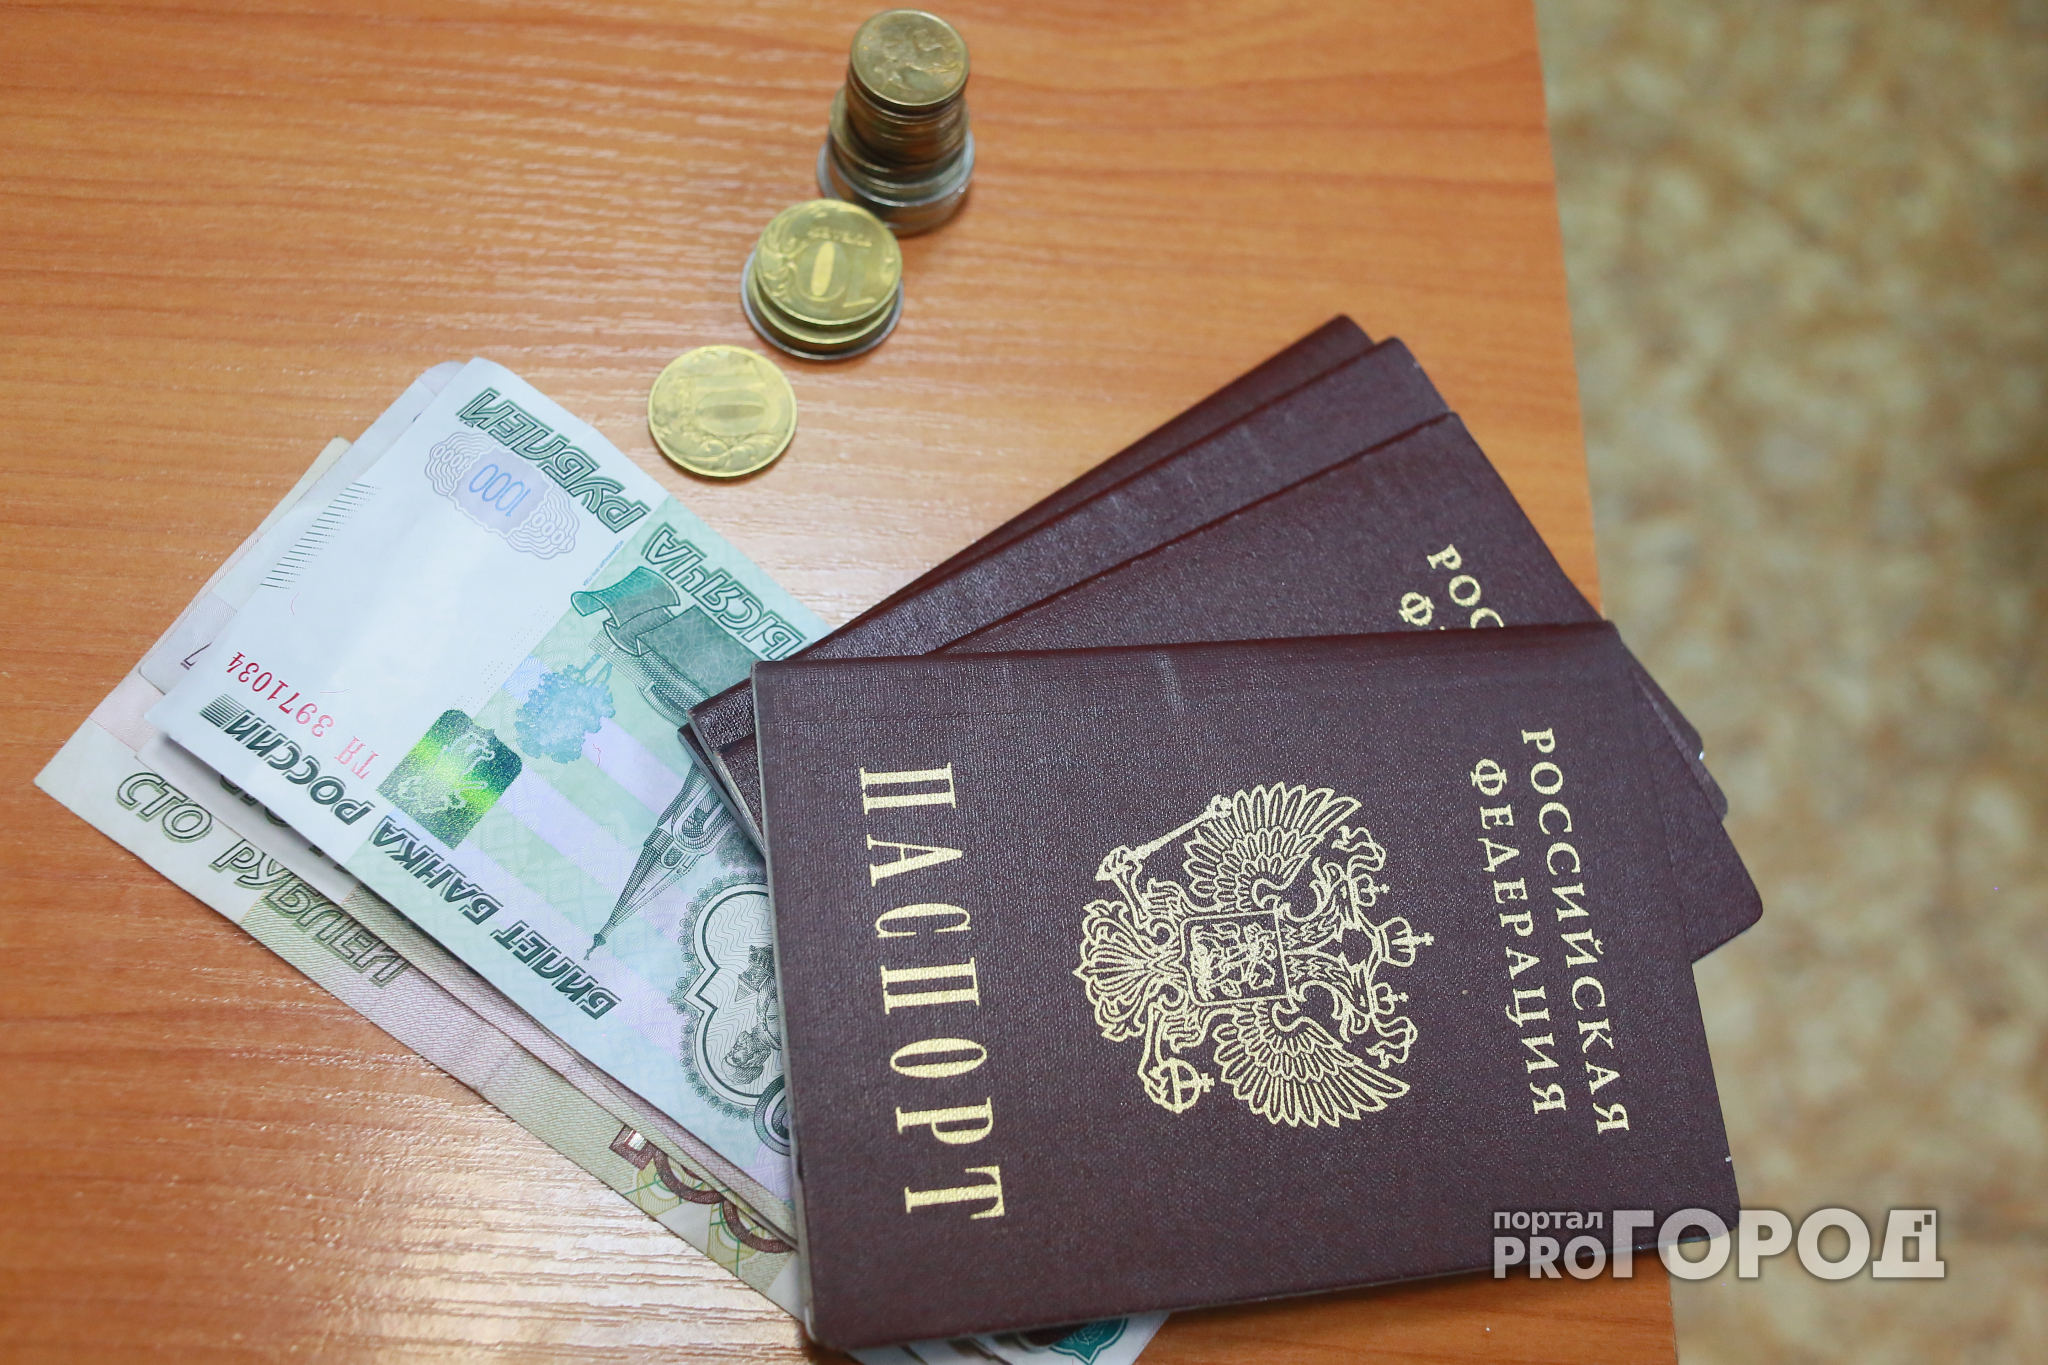 Жителю Марий Эл, чтобы уехать из России, придется заплатить больше денег